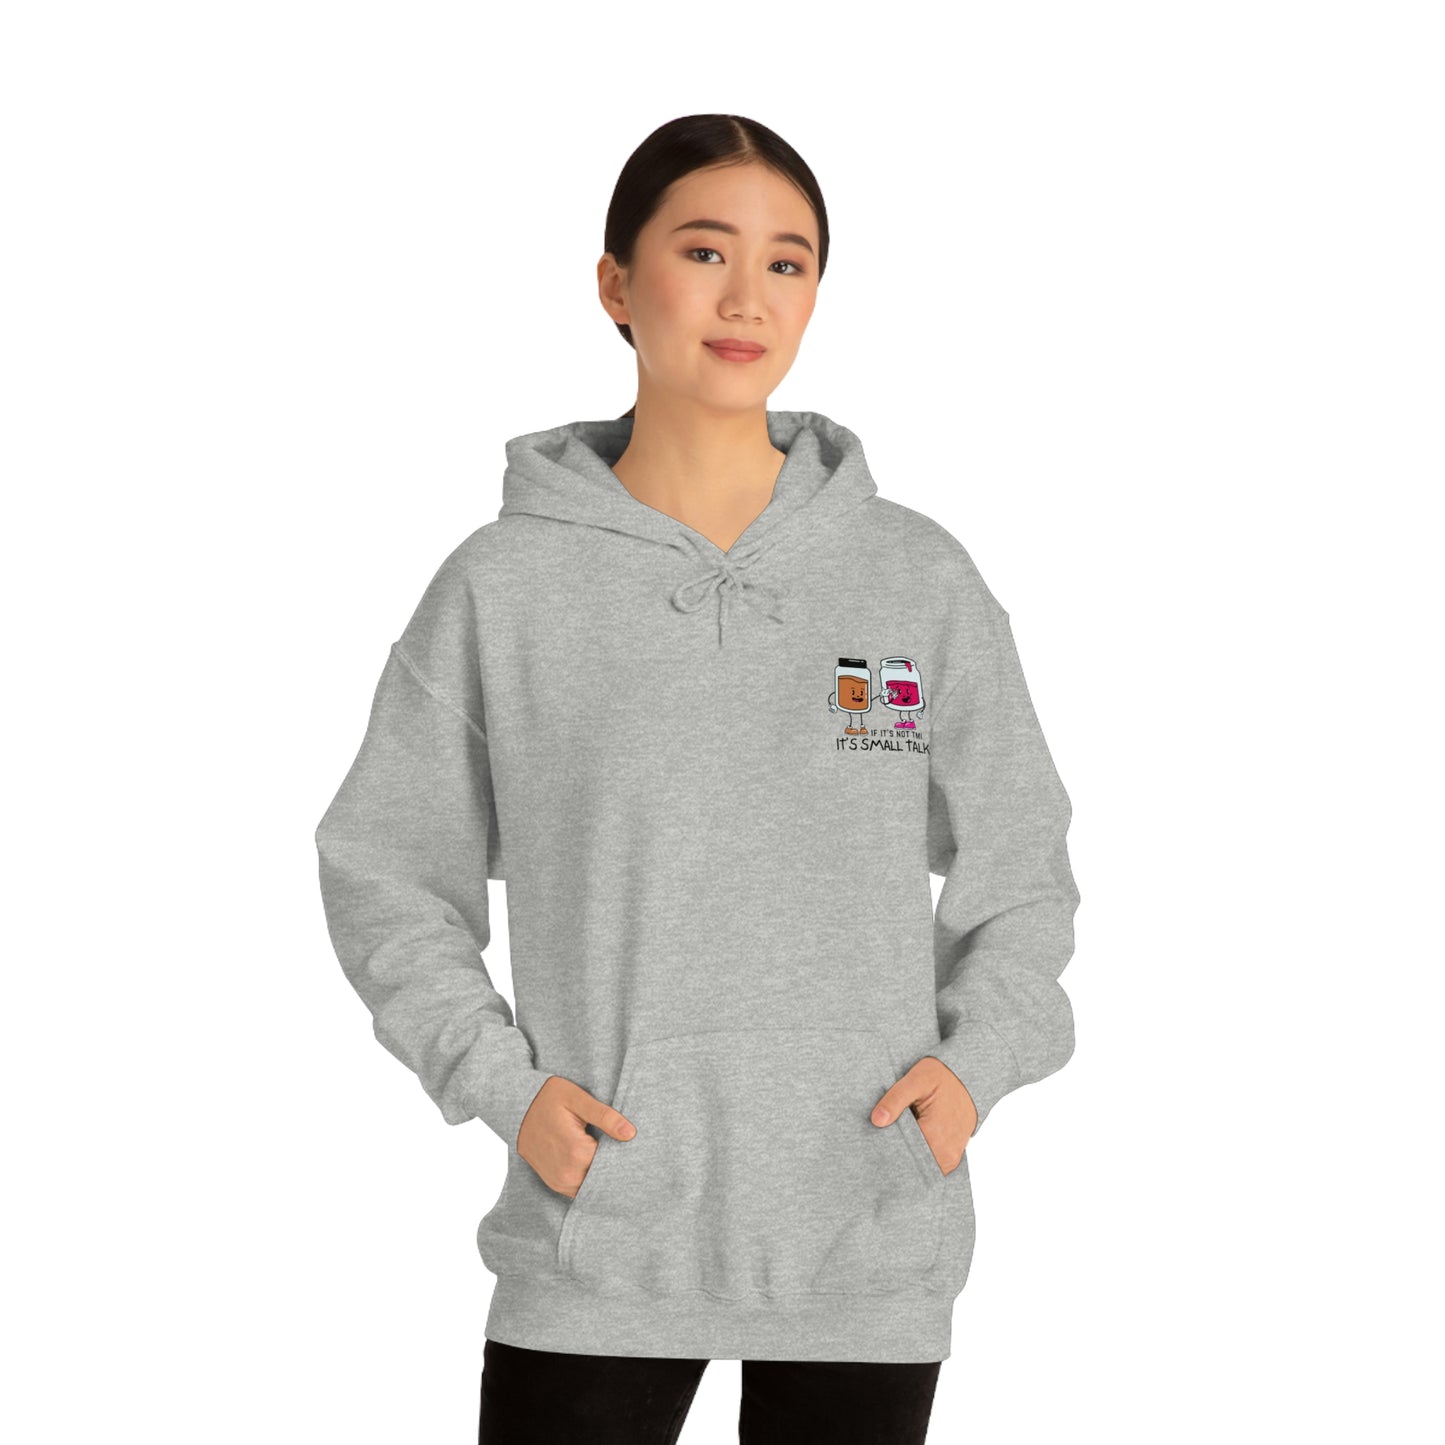 "If It's Not TMI, It's Small Talk" Unisex Heavy Blend™ Hooded Sweatshirt